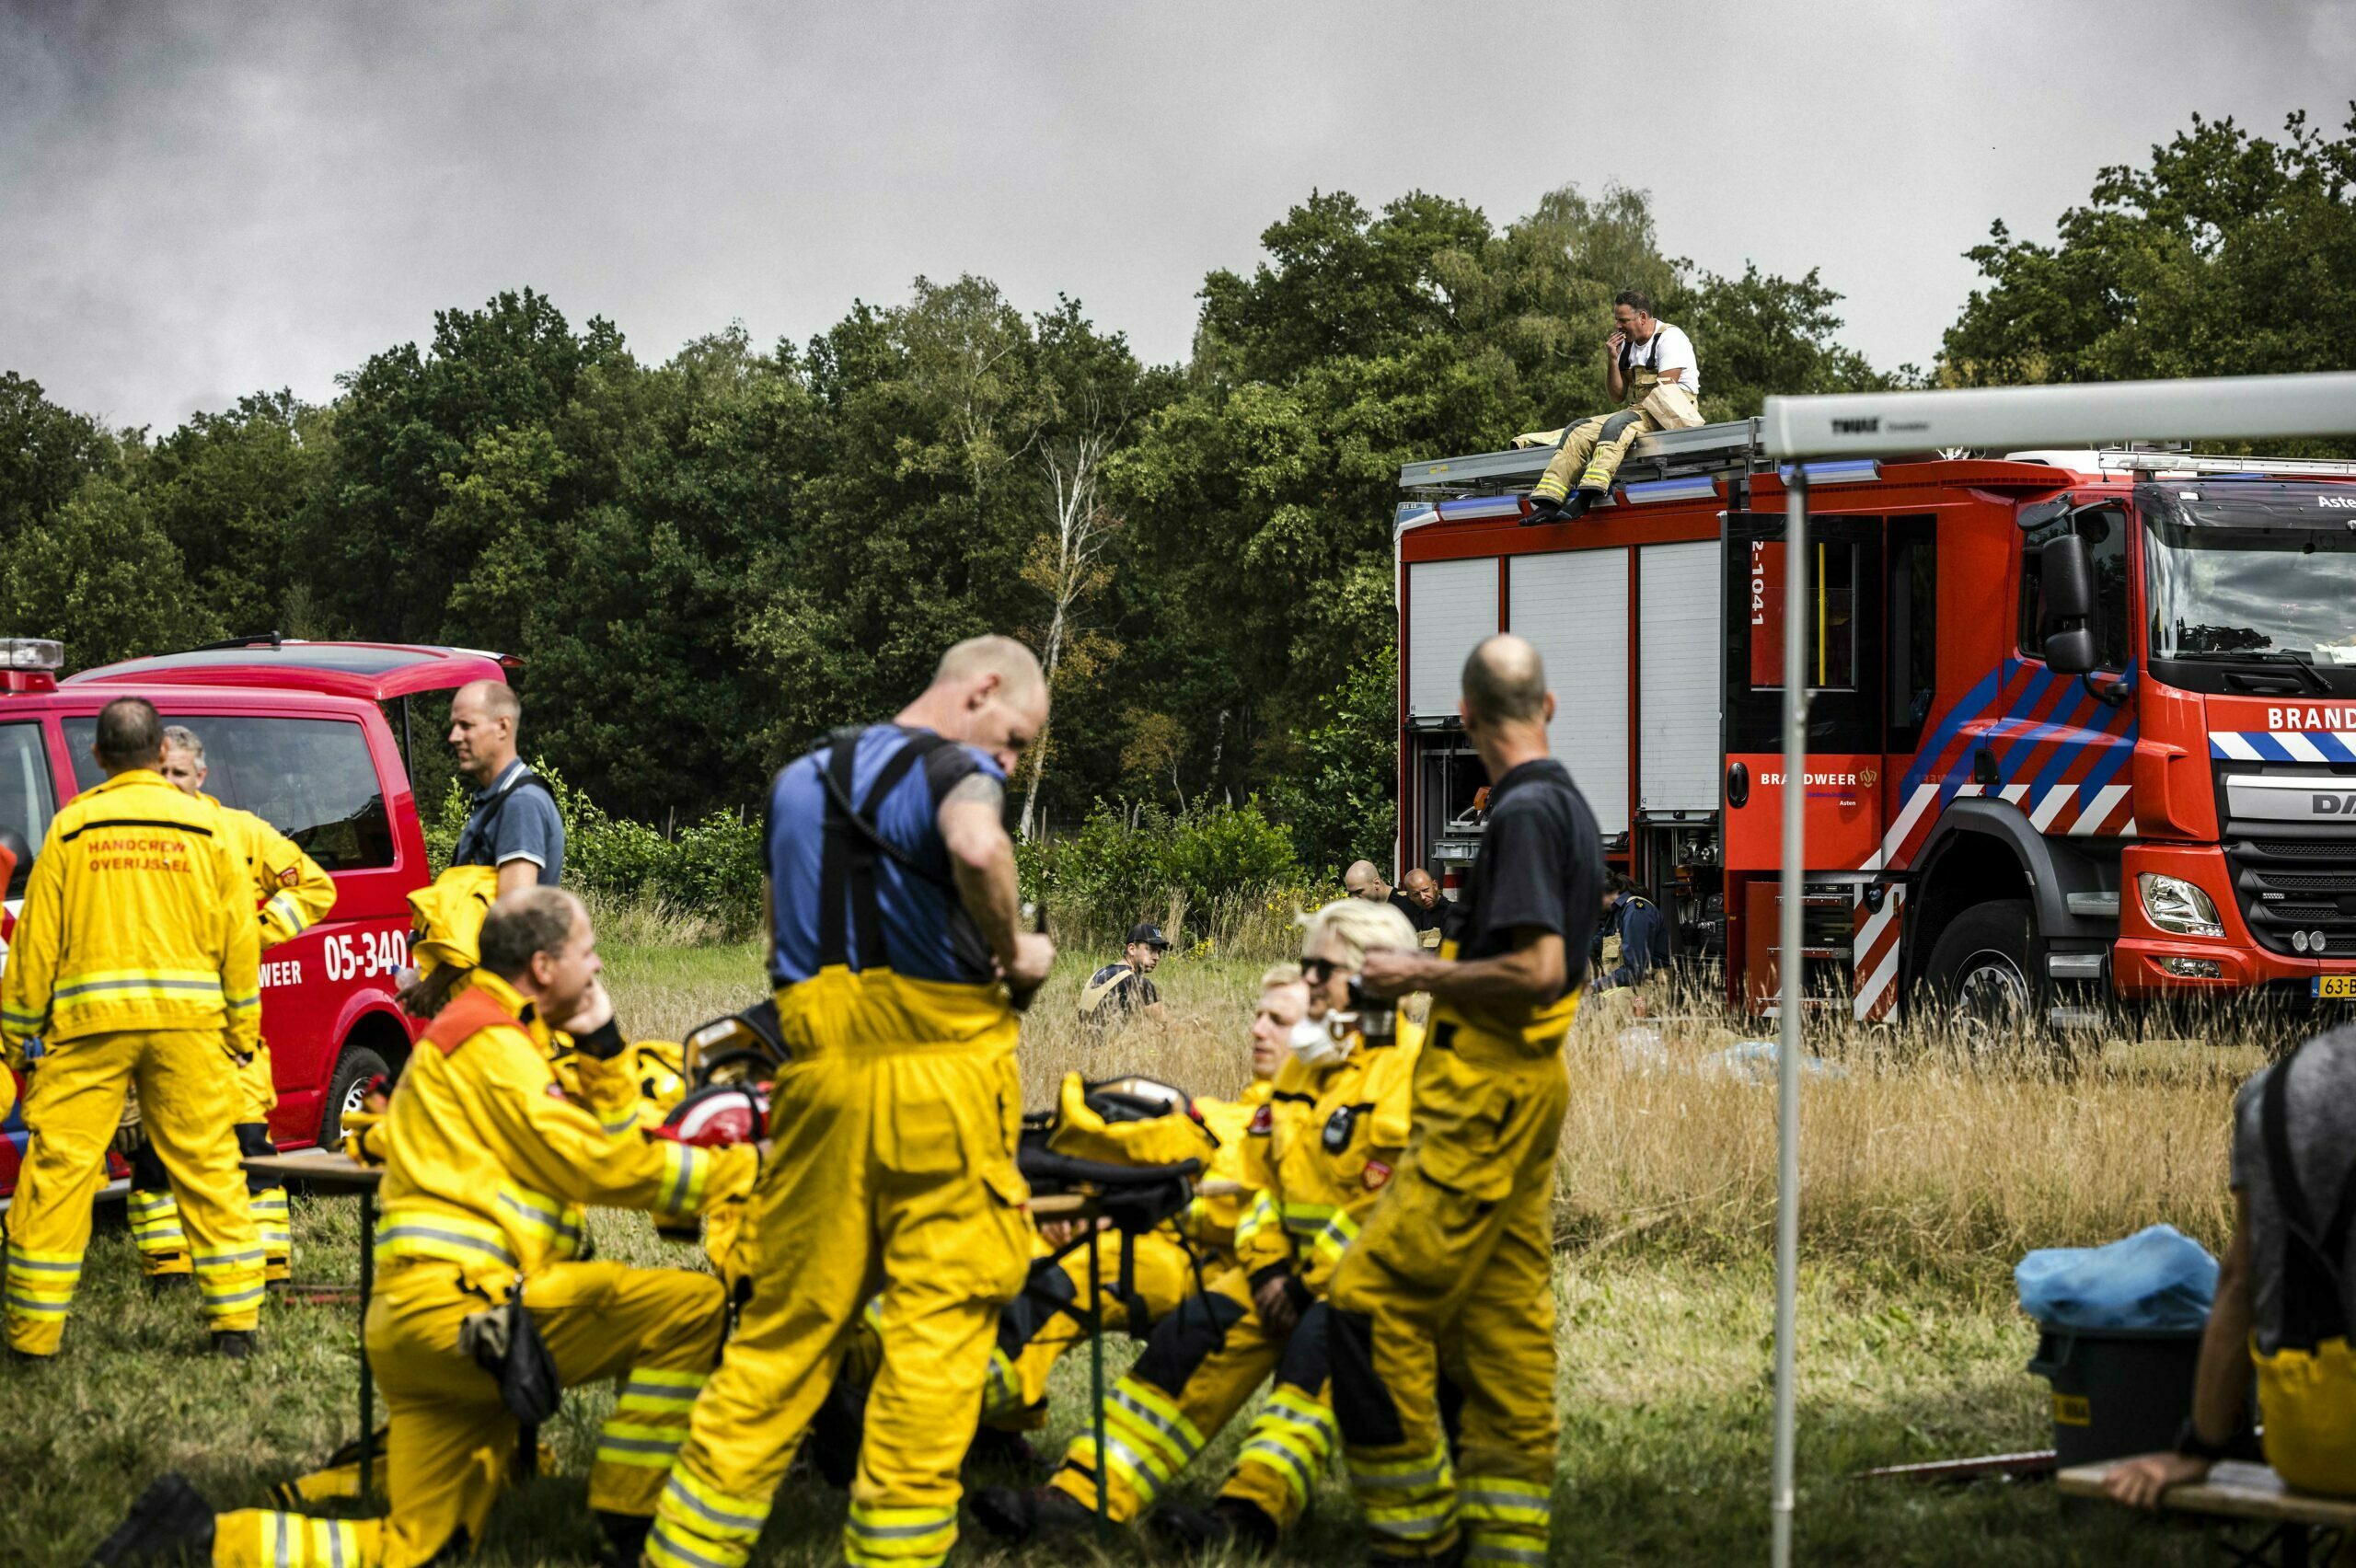 Brandweer is niet genoeg voorbereid op toename natuurbranden